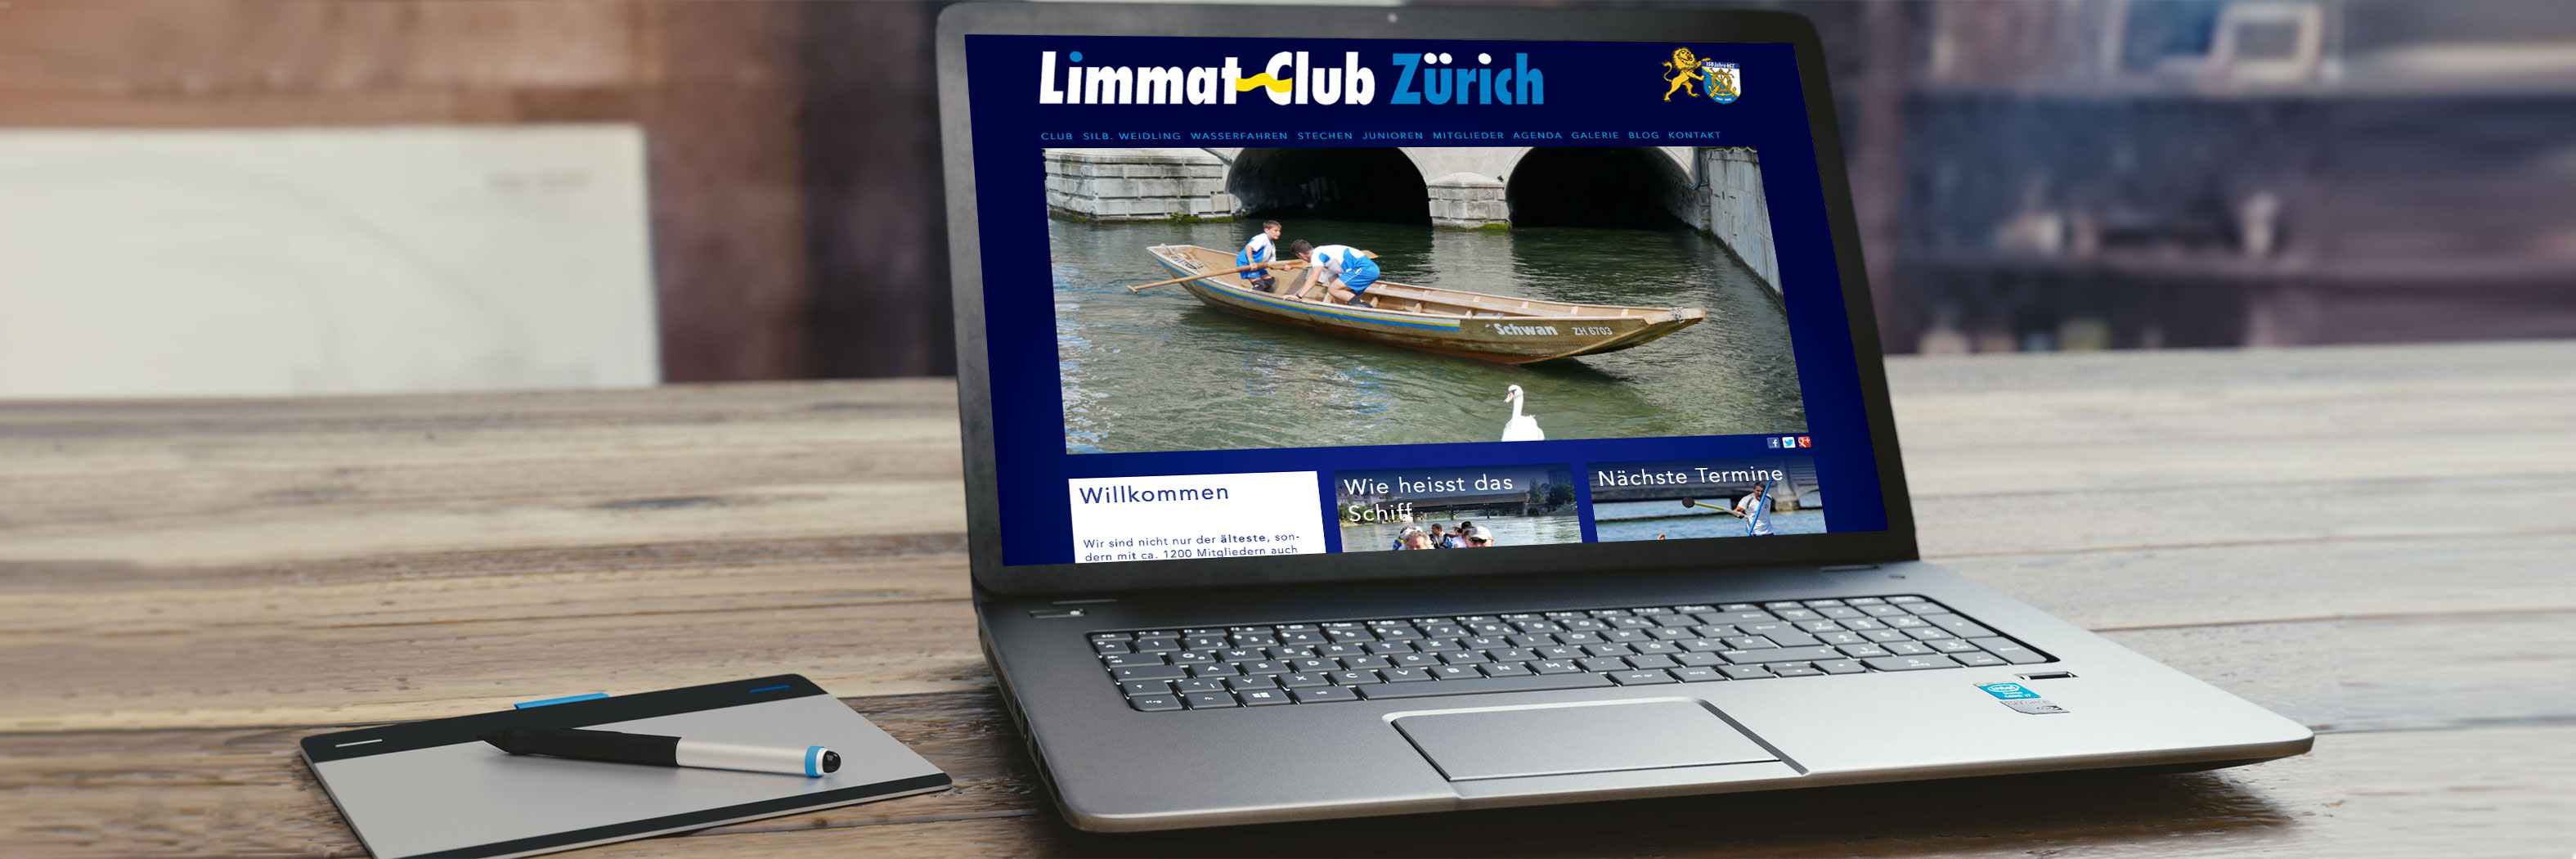 Limmat Club Zürich Wasserfahren mit Weidlingen